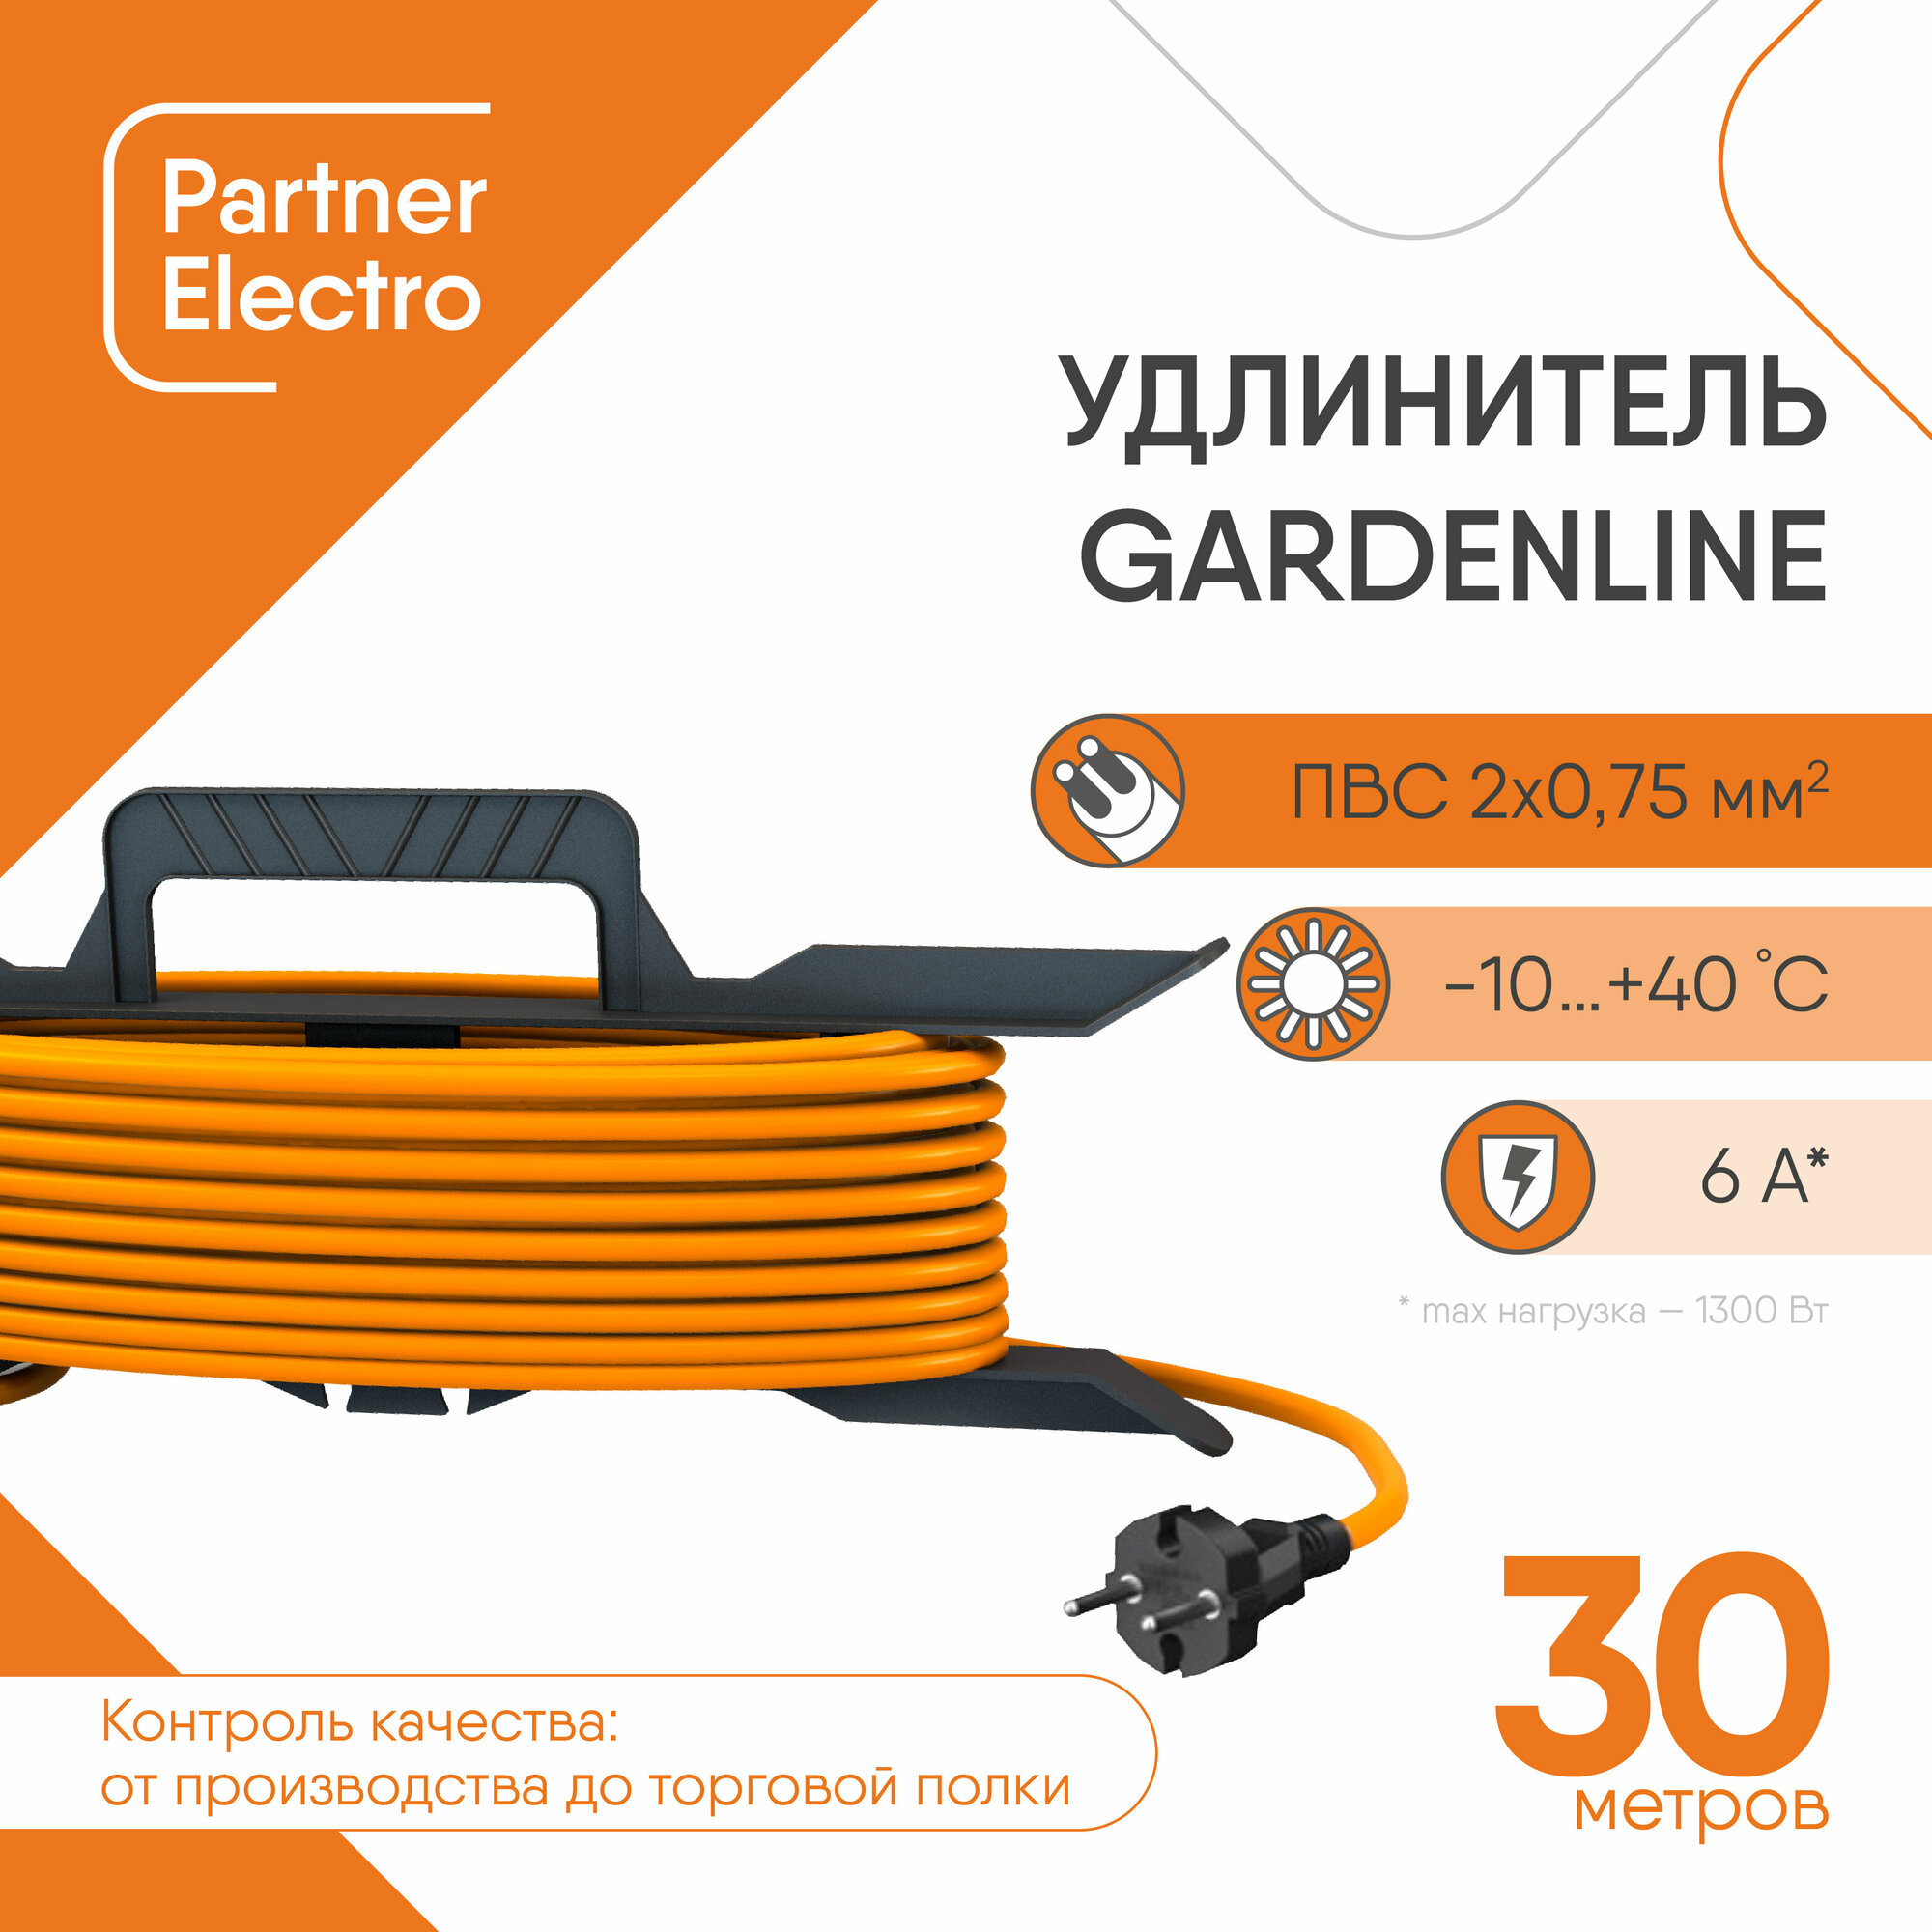 Удлинитель силовой на рамке Партнер Электро GardenLine PL02 (US201B-130OR) открытая установка без заземления 30 м 6 А 220 В 1,3 кВт 1 розетка ПВС 2х0,75 мм2 IP44 с брызгозащитой оранжевый